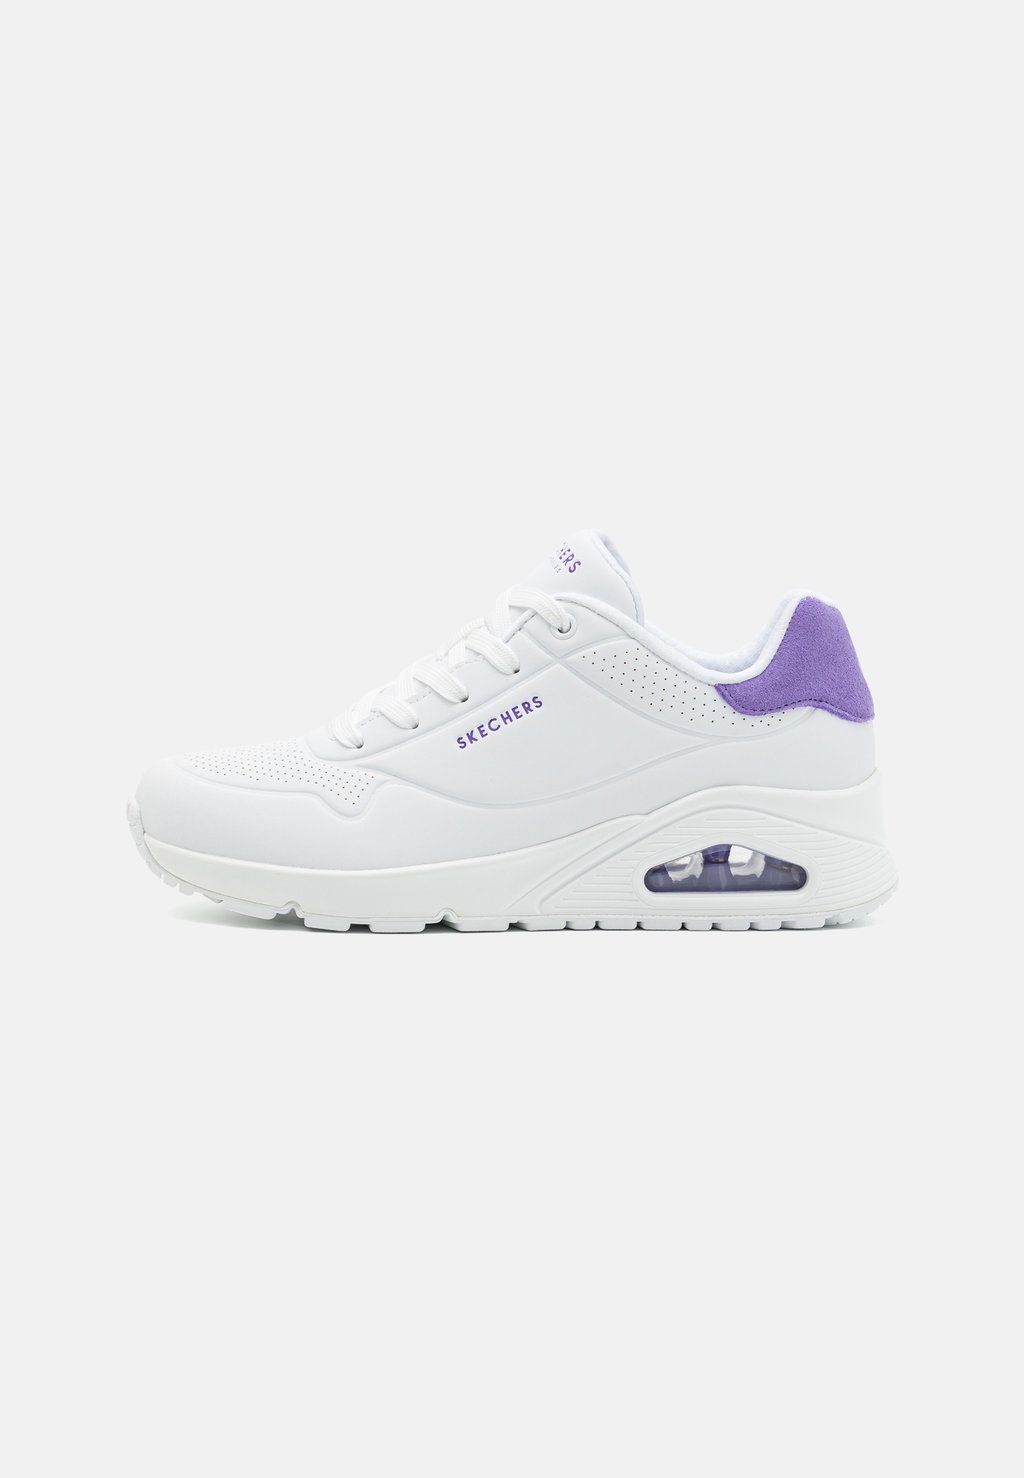 Низкие кроссовки Uno Skechers Sport, цвет white/purple кроссовки низкие uno skechers sport цвет white coral